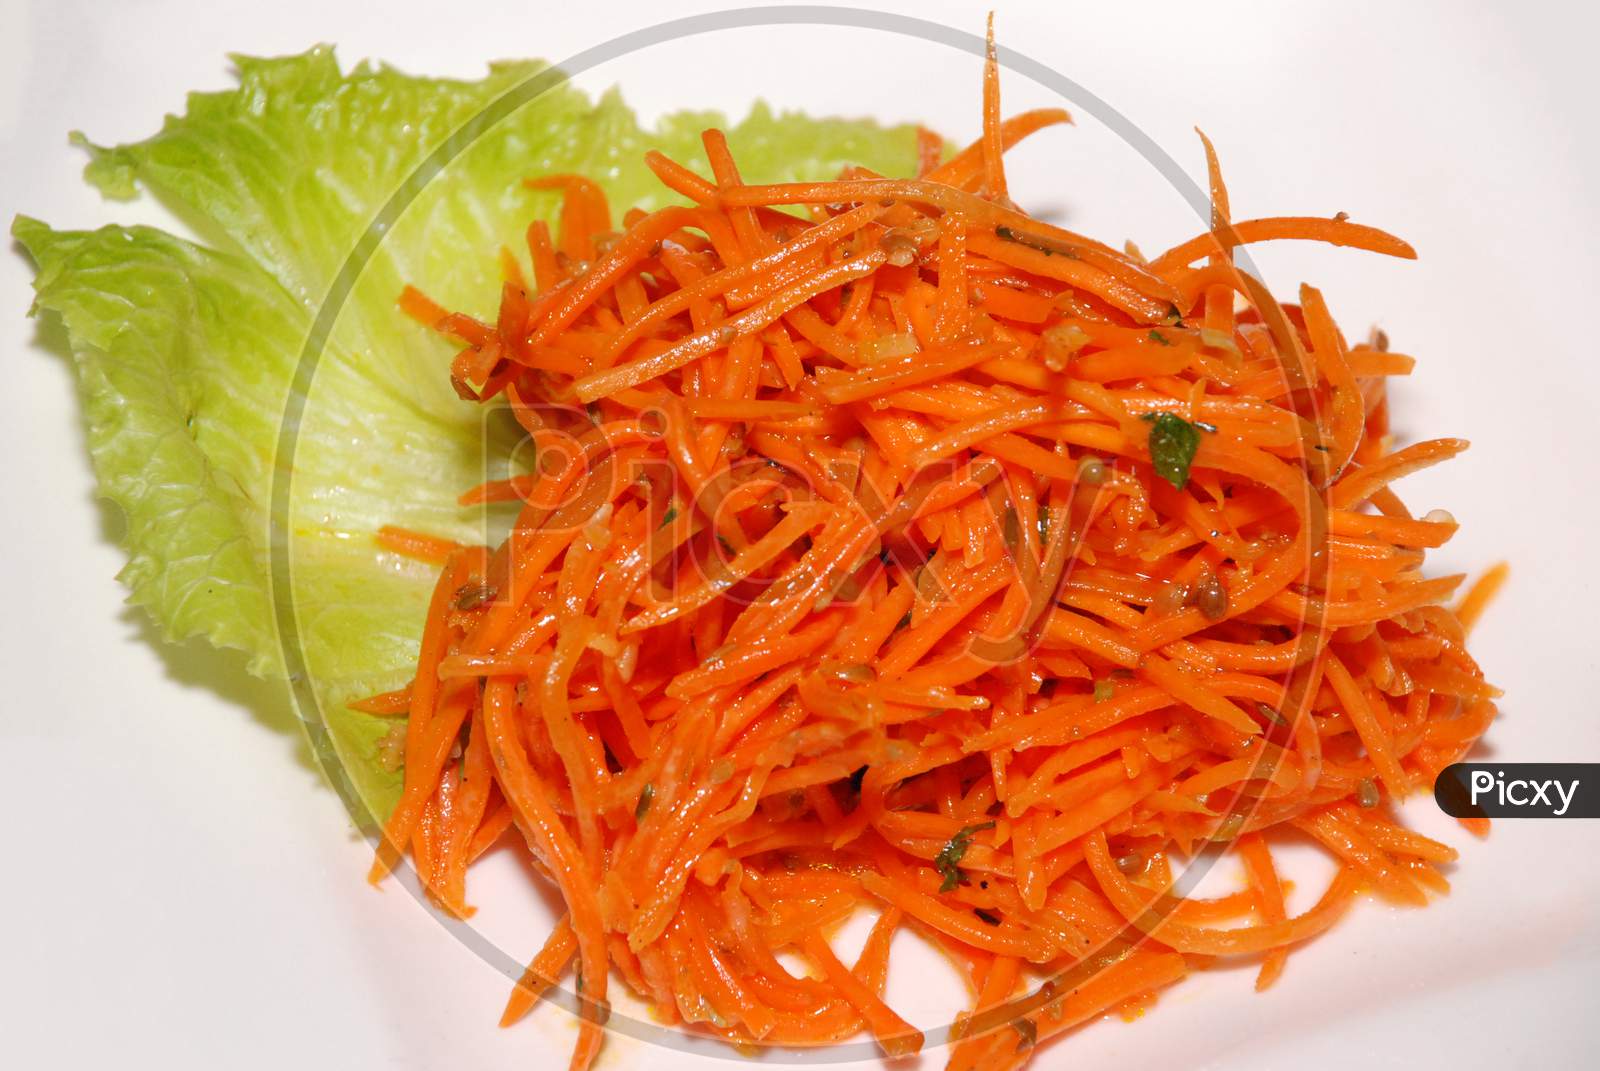 Korean Carrot Salad On The White Plate